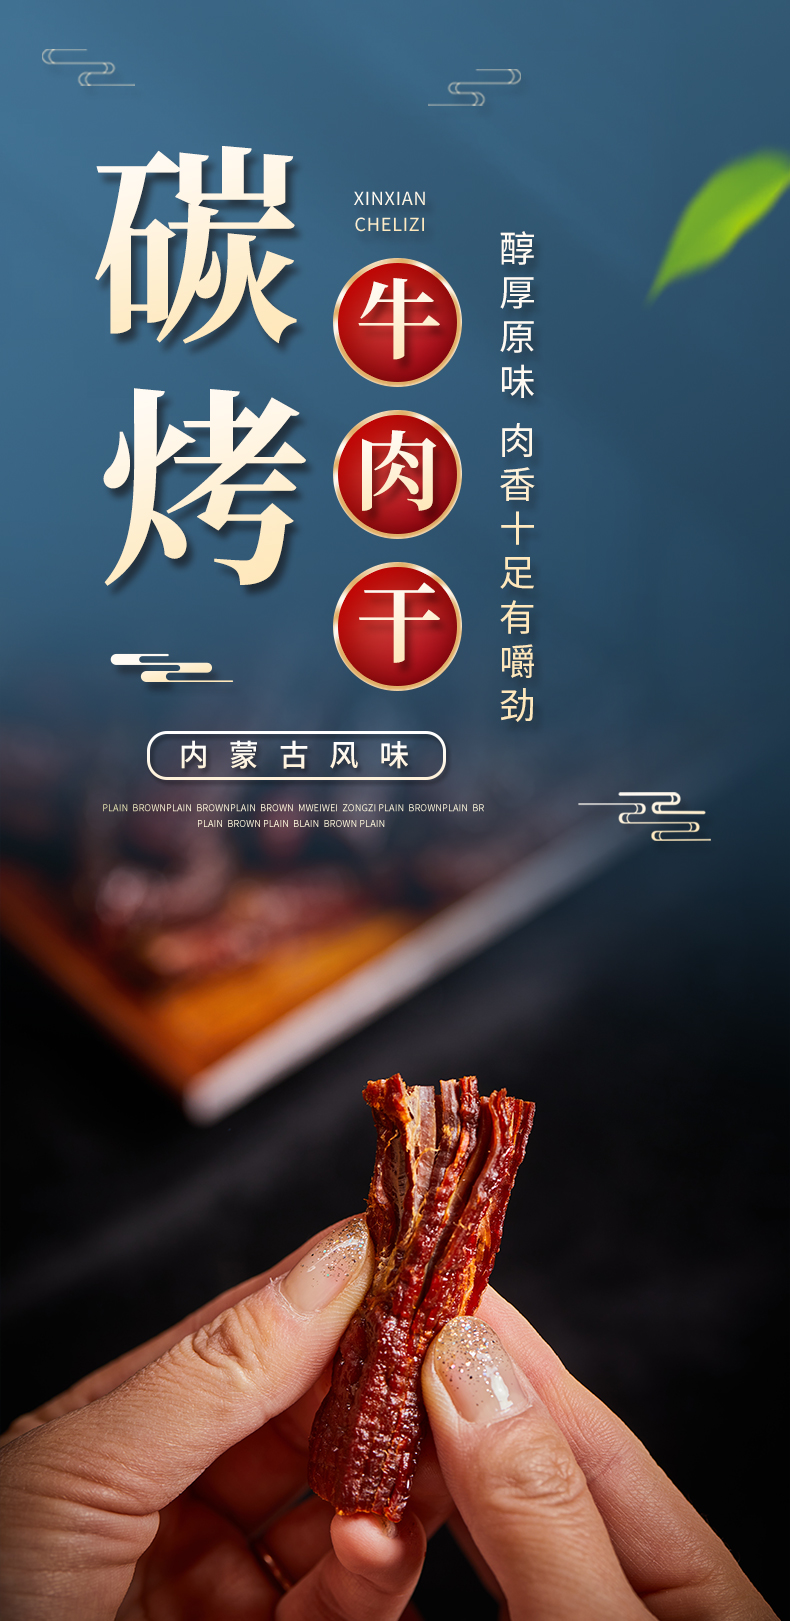 牛肉干广告宣传语图片